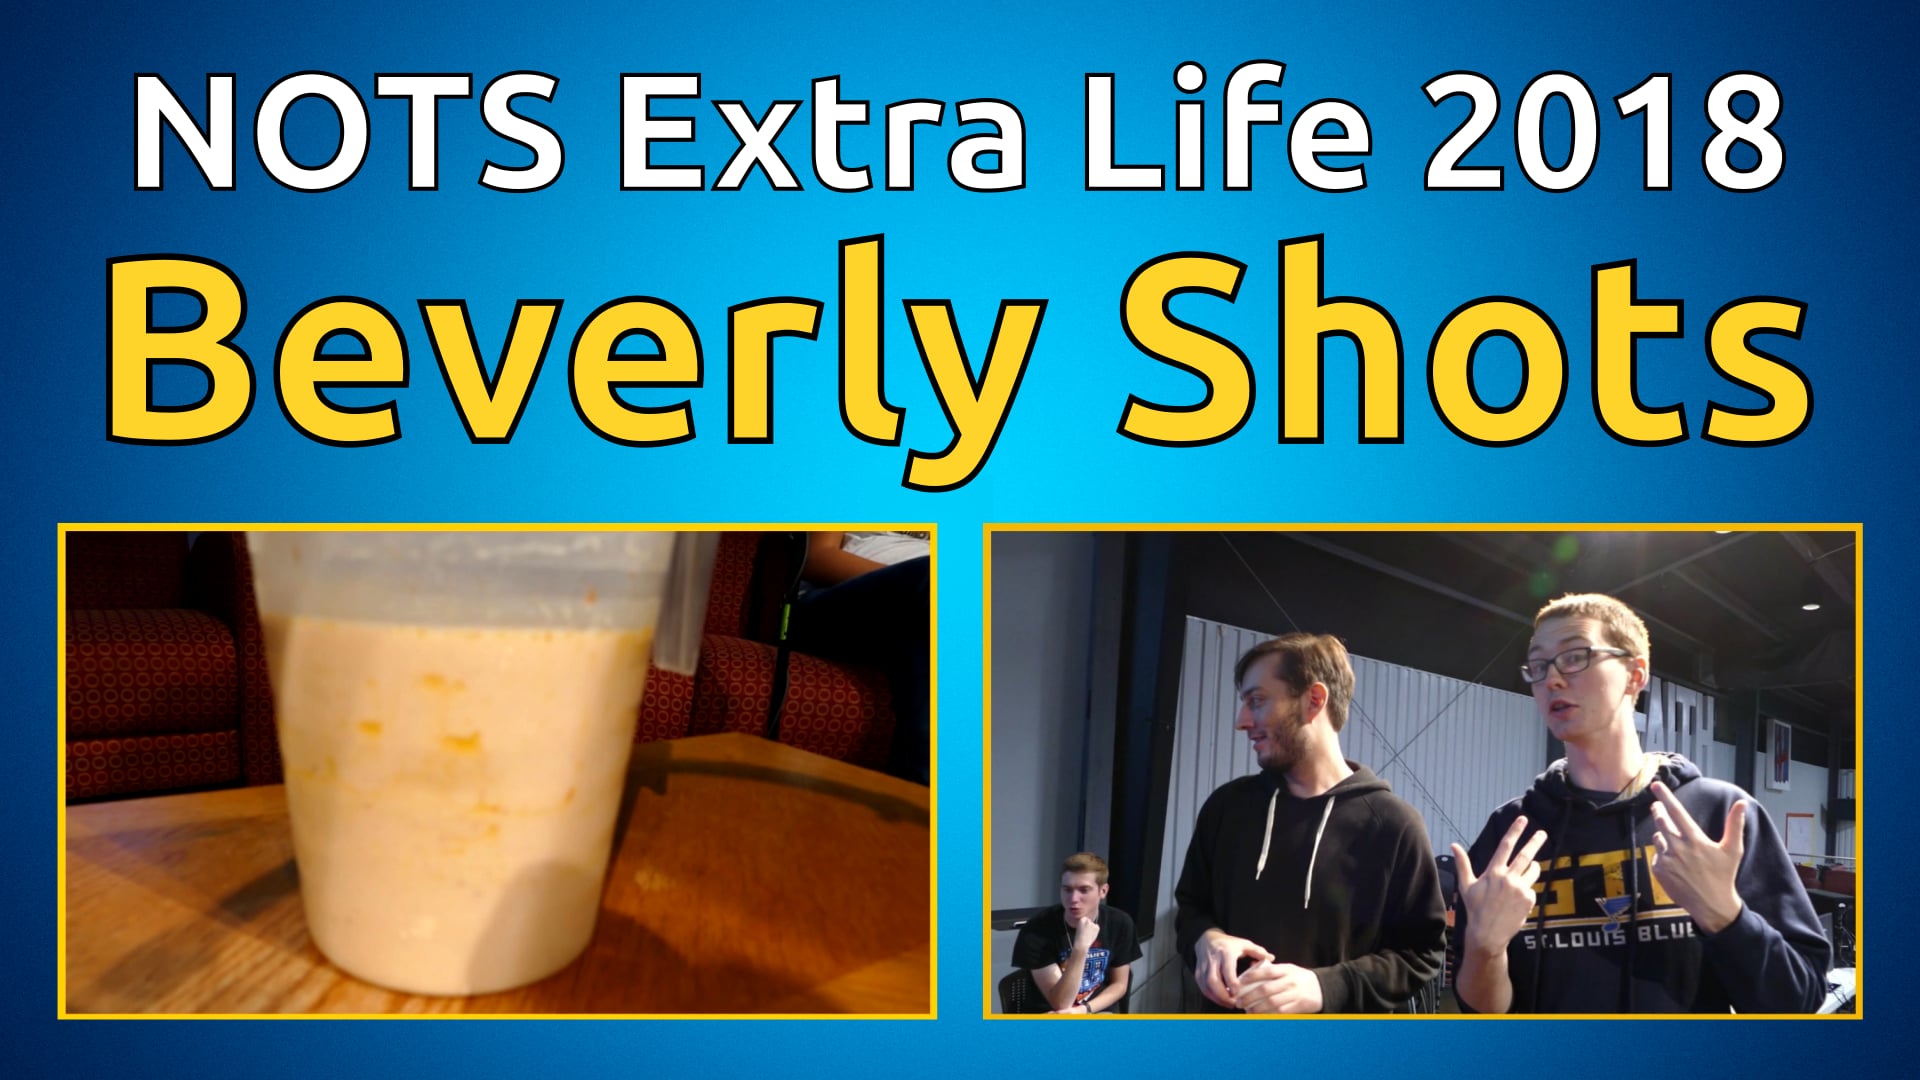 Beverly Shots - NOTS Extra Life 2018